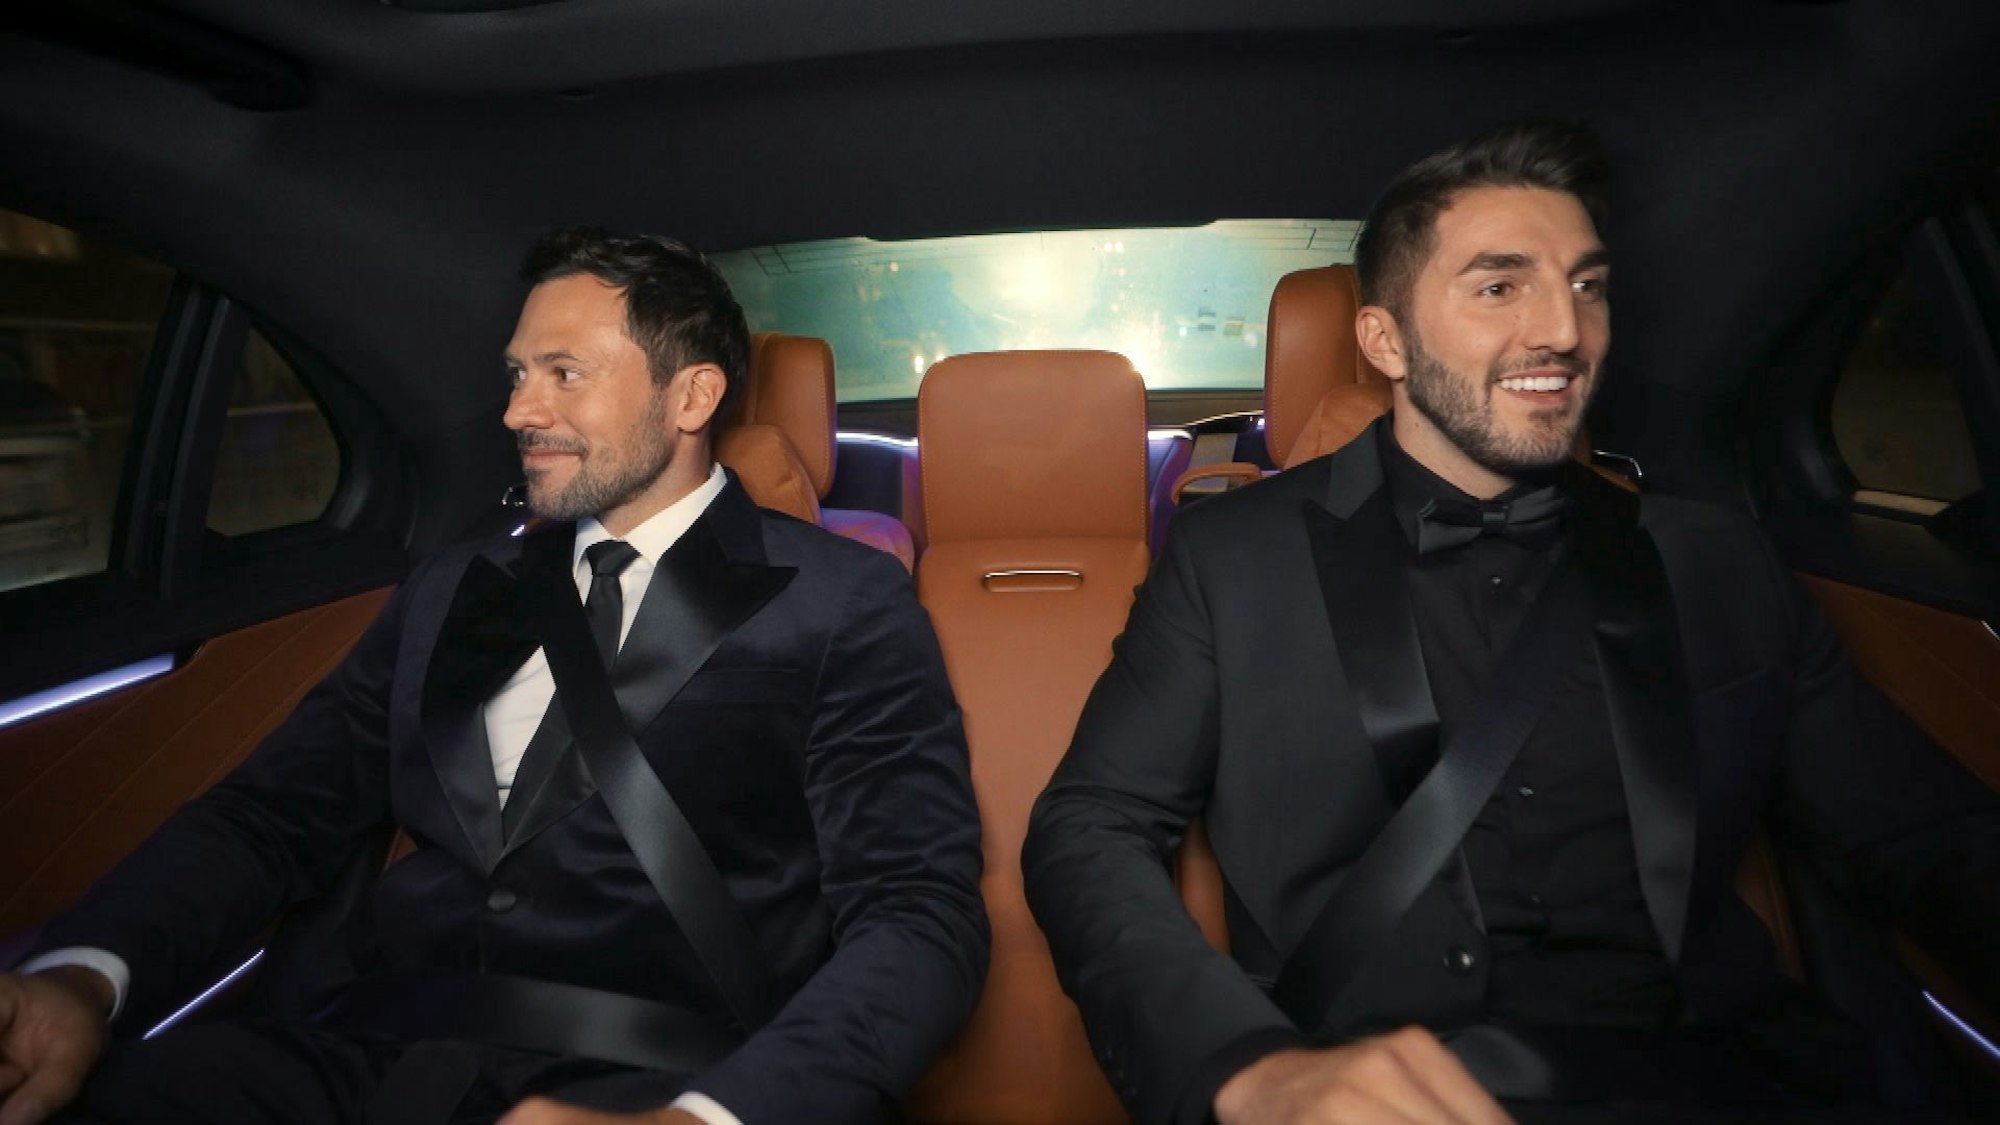 Zwei Männer in Anzügen sitzen in einem Auto nebeneinander.